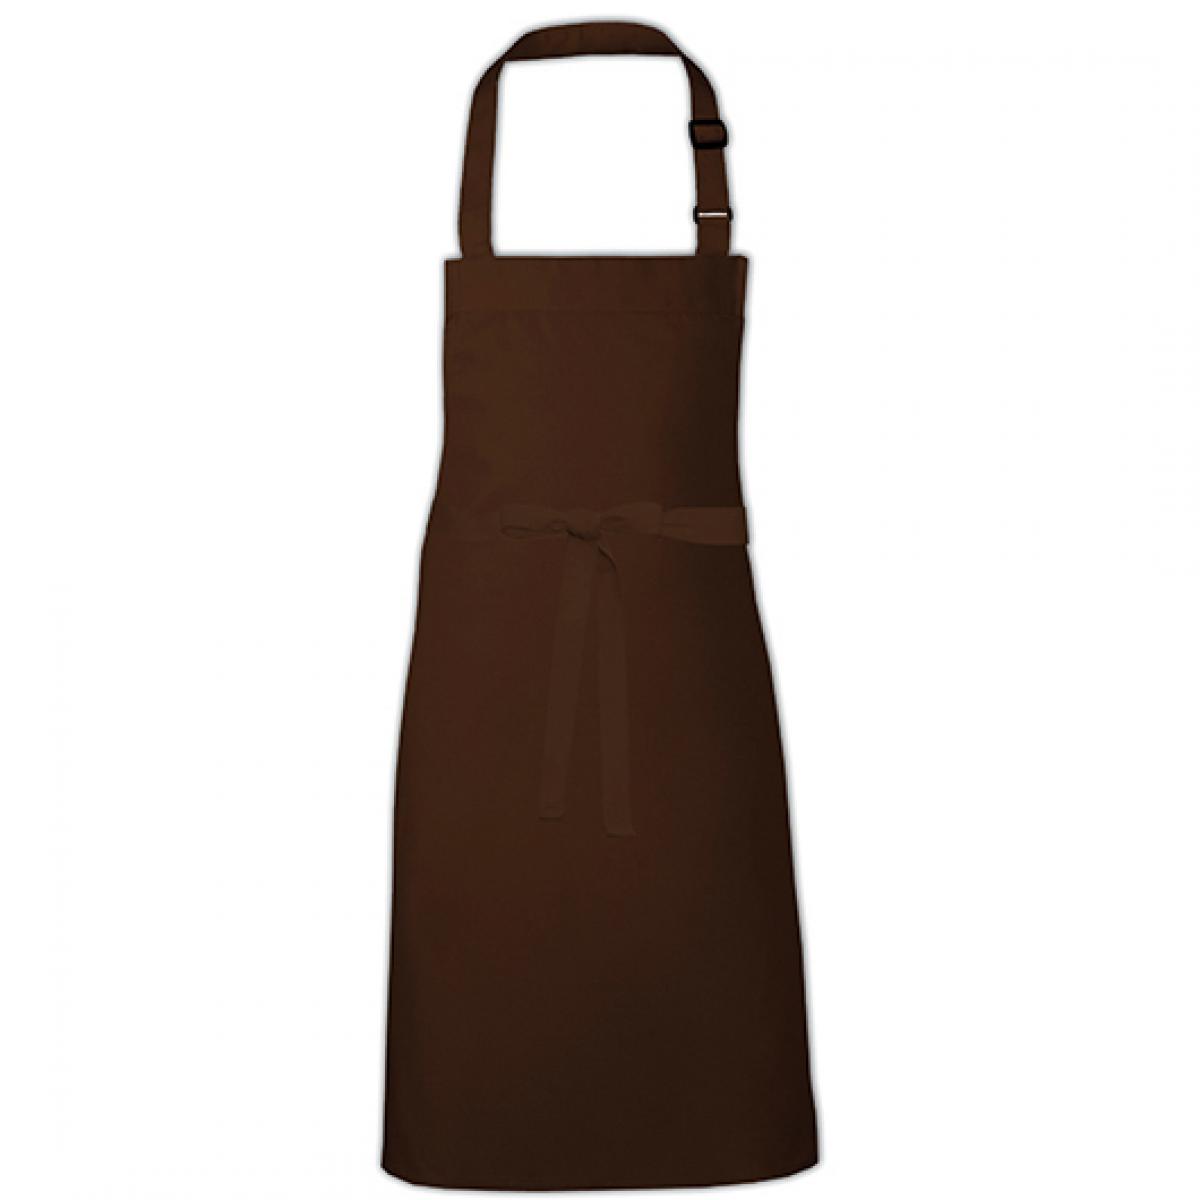 Hersteller: Link Kitchen Wear Herstellernummer: BBQ9073ADJ Artikelbezeichnung: Barbecue Apron adjustable 73 x 90 cm -  Waschbar bis 60 °C Farbe: Brown